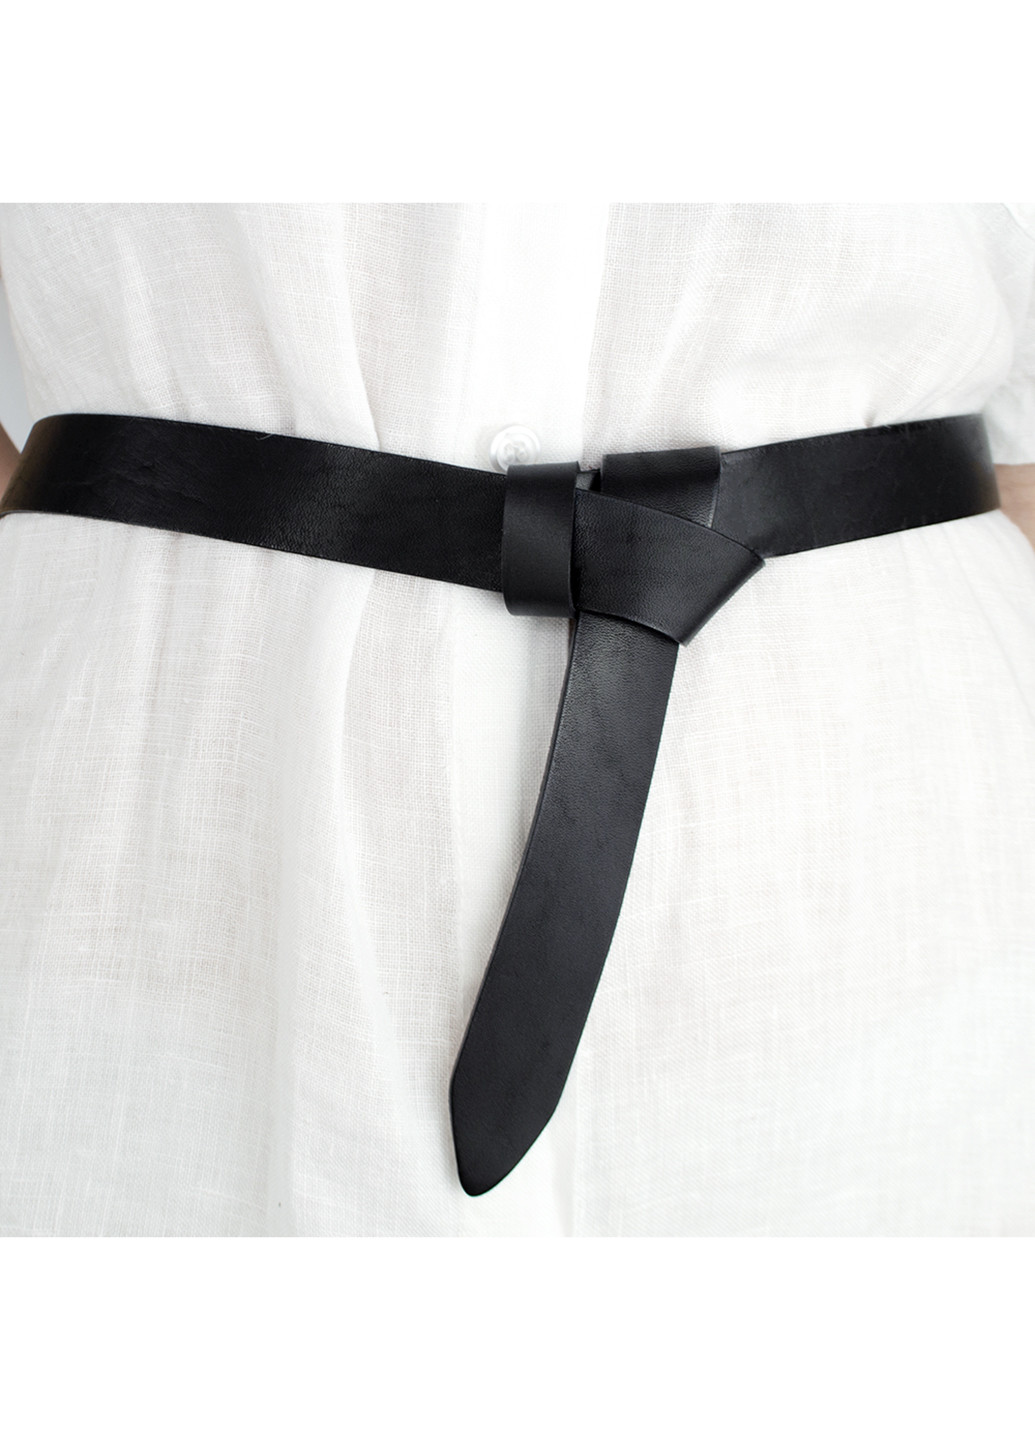 Ремень женский кожаный-узел без пряжки черный SF-258 black (125 см) SFIP (253411511)